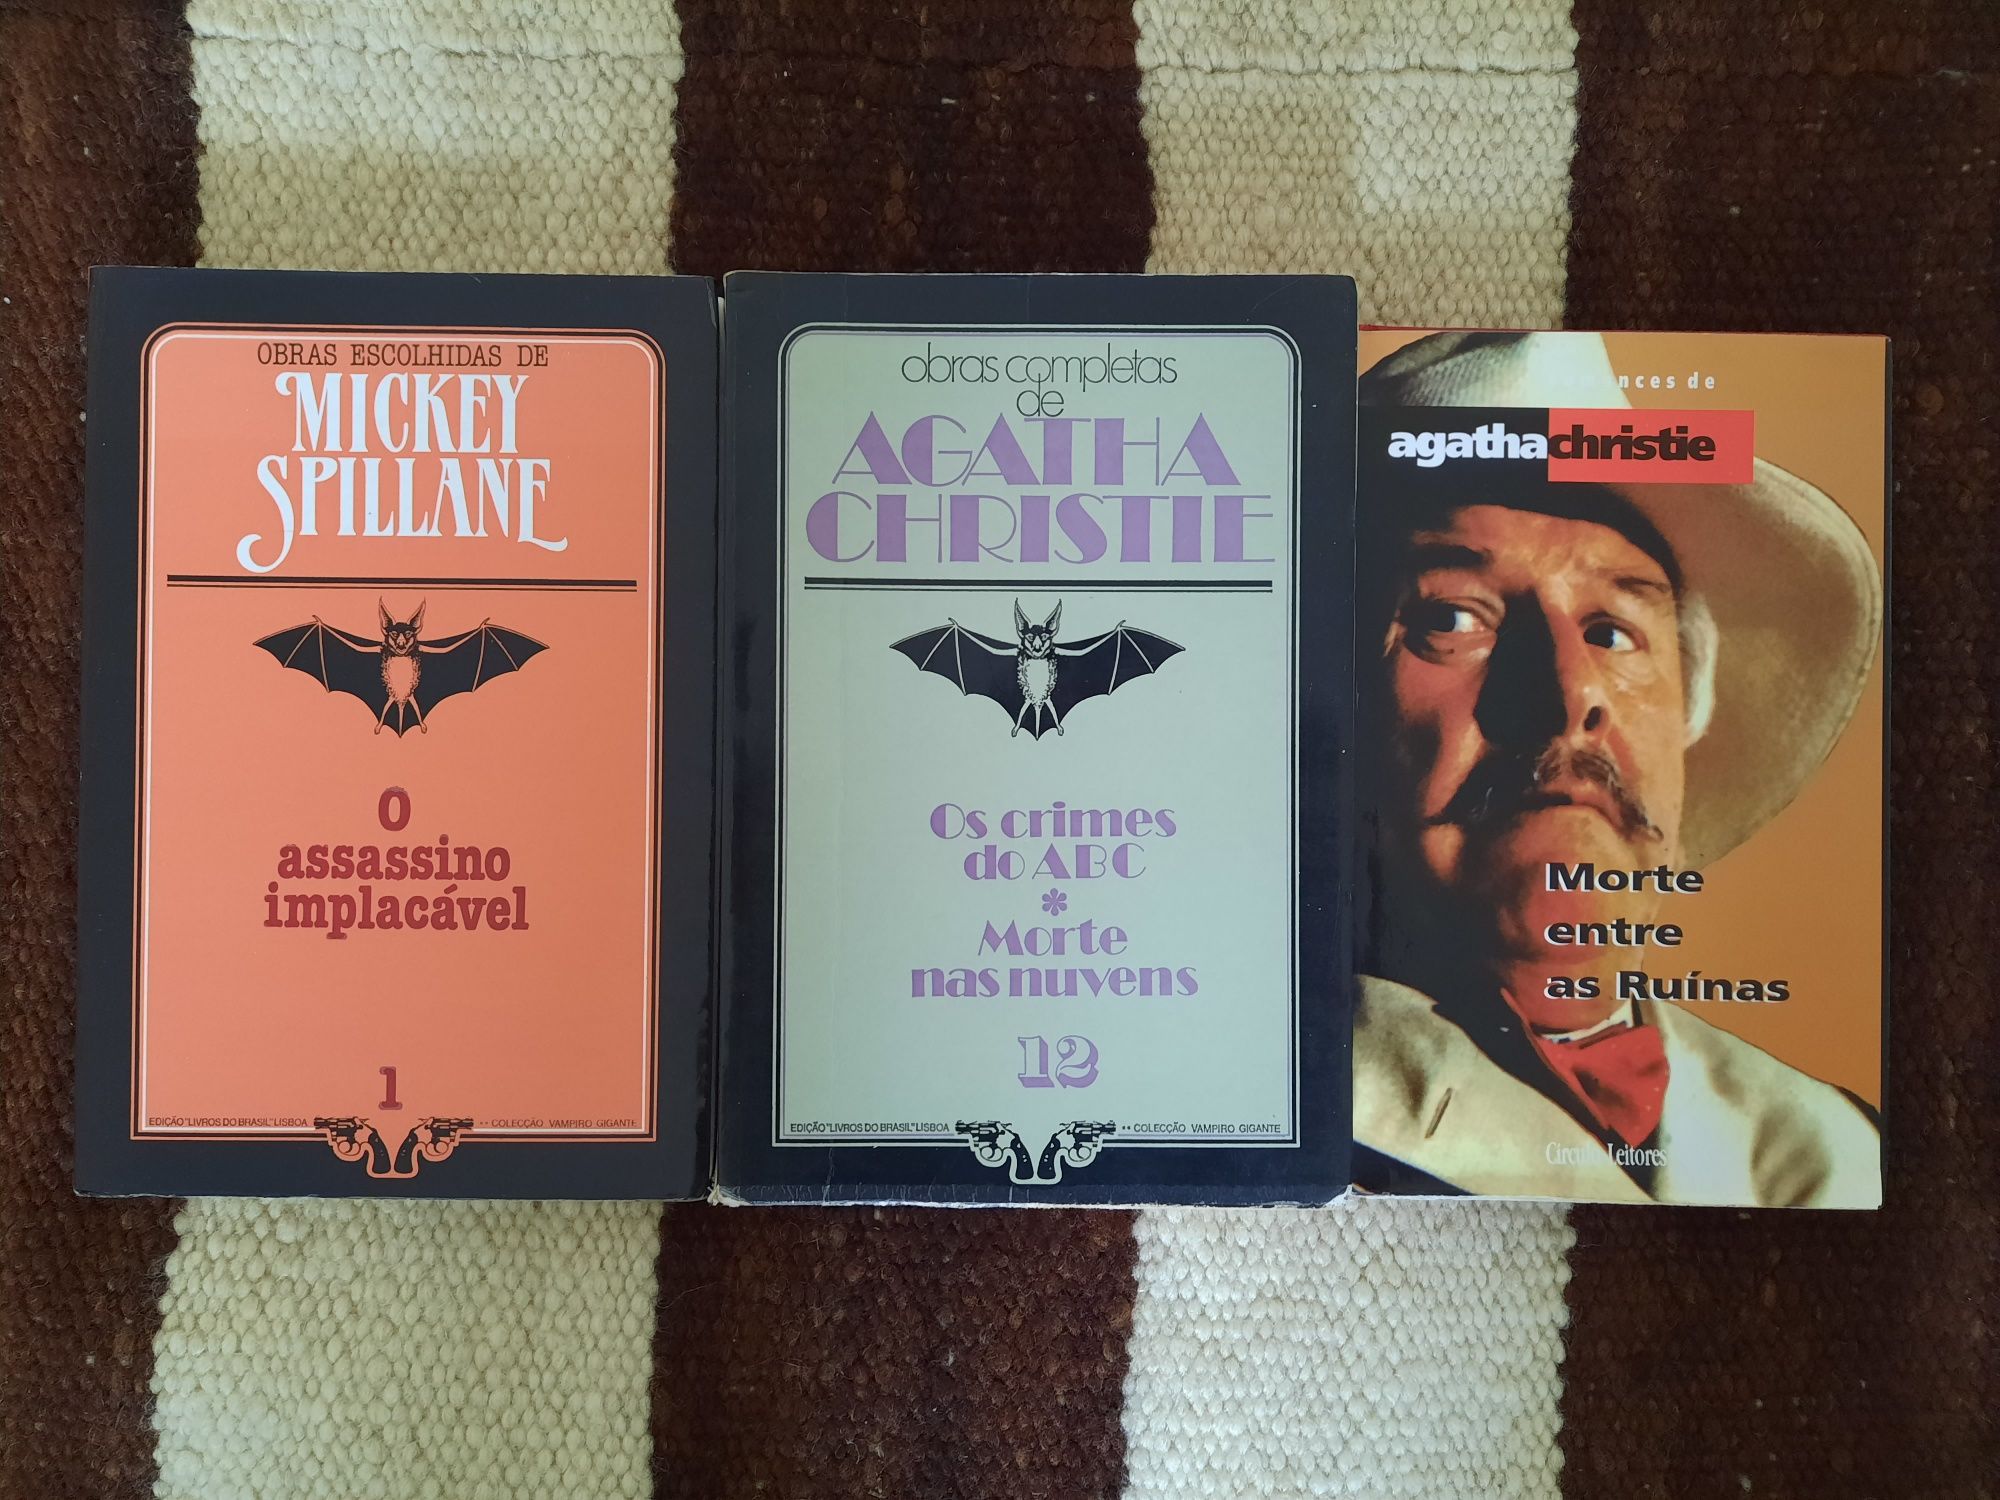 Livros de Agatha Christie e Mickey Spillane